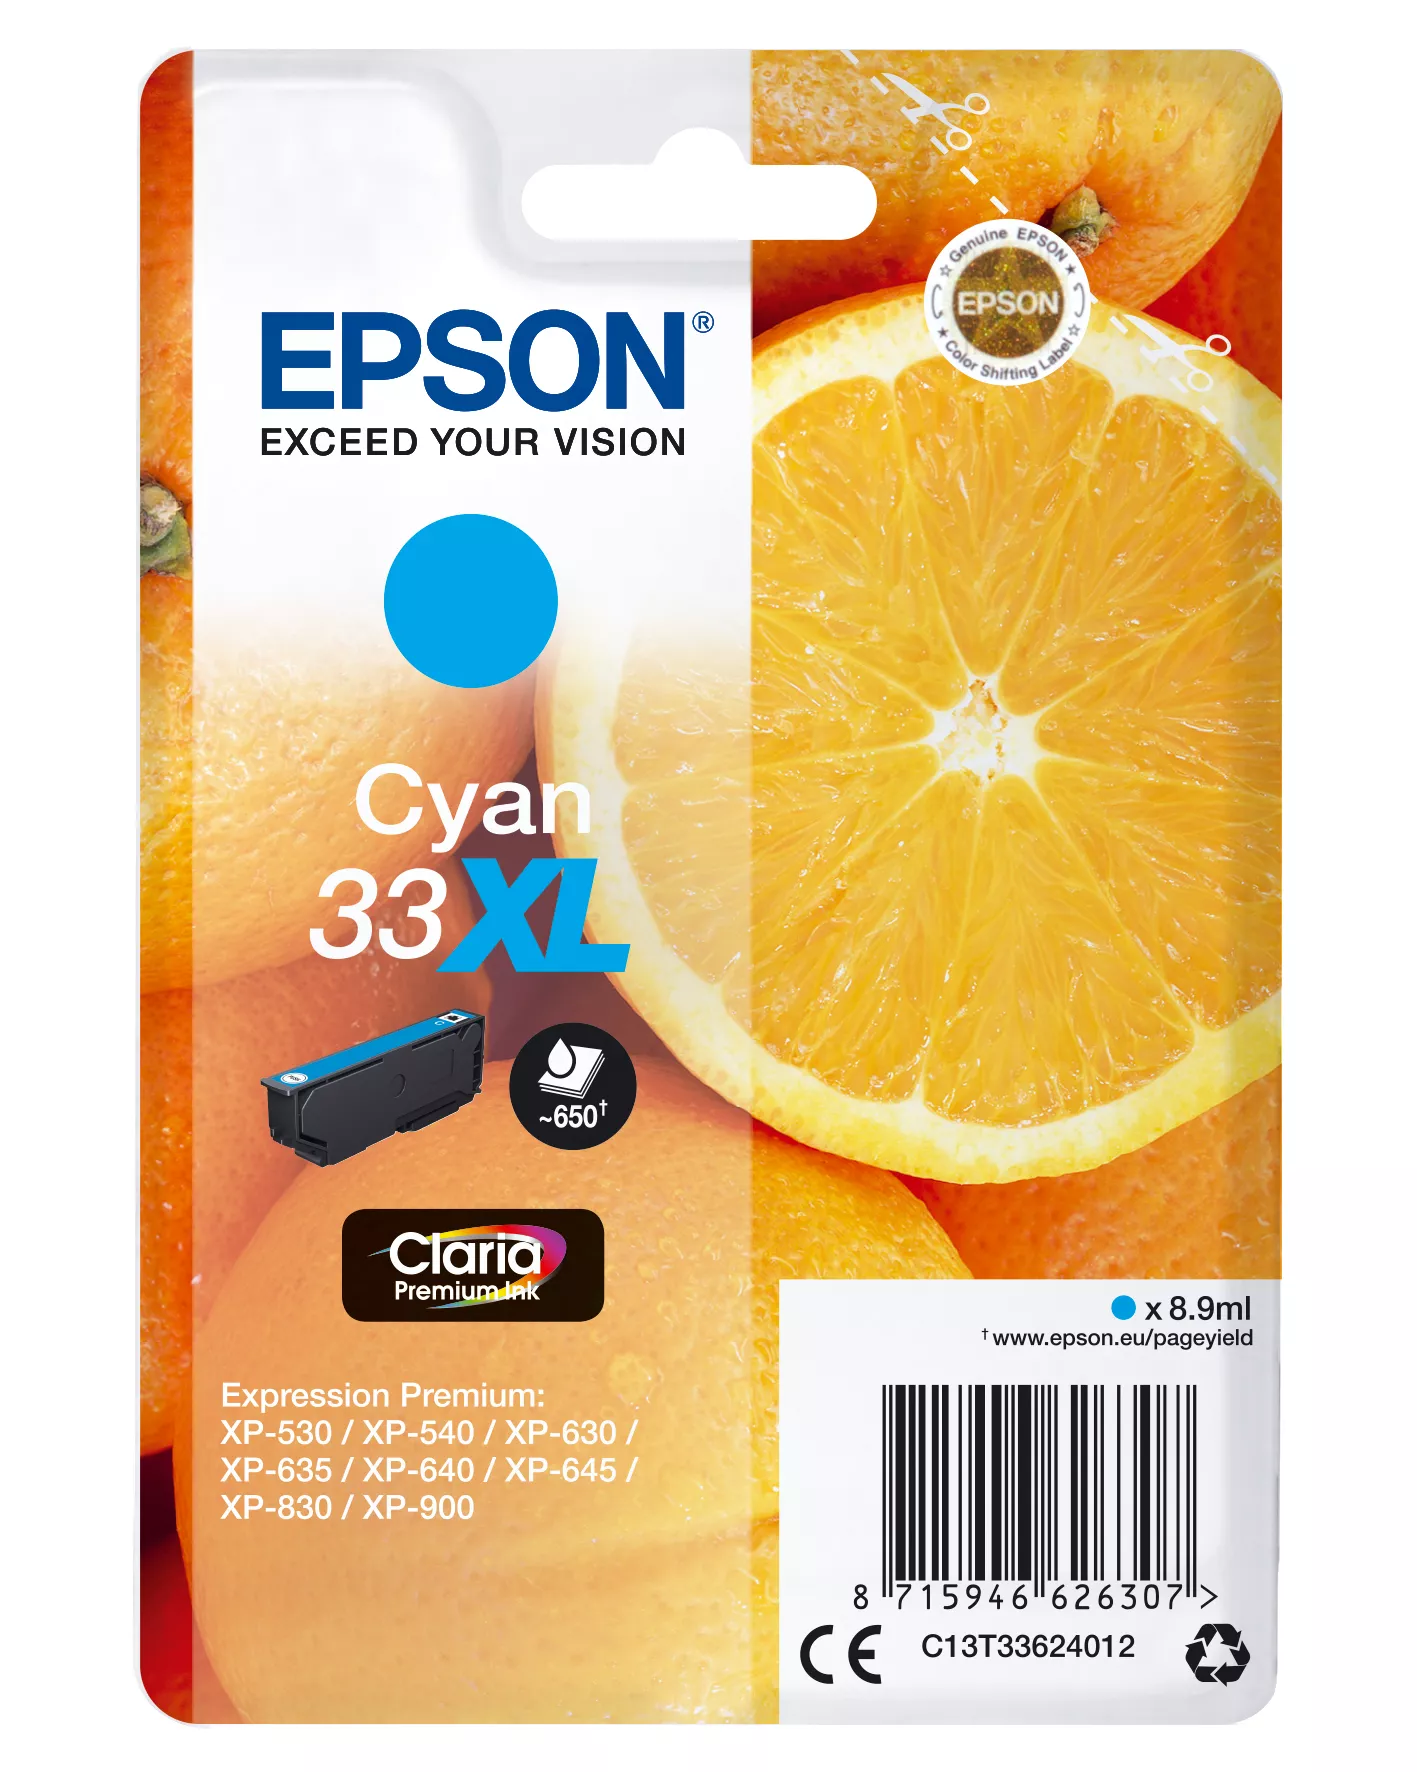 Vente EPSON Cartouche Oranges Encre Claria Premium Cyan XL au meilleur prix